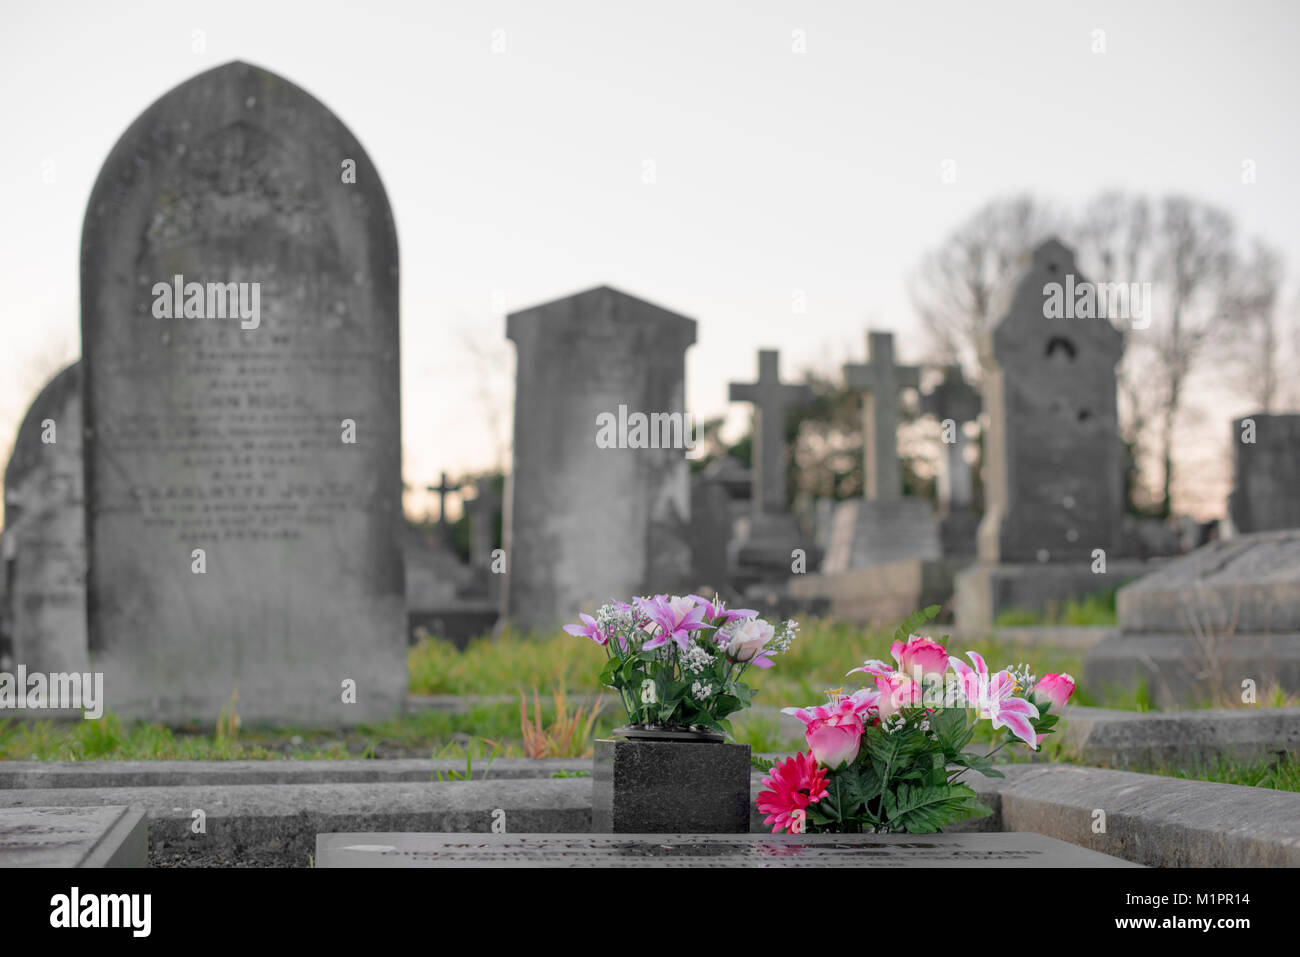 Des fleurs sur une tombe, le reste du cimetière à l'arrière-plan et quelques arbres Banque D'Images